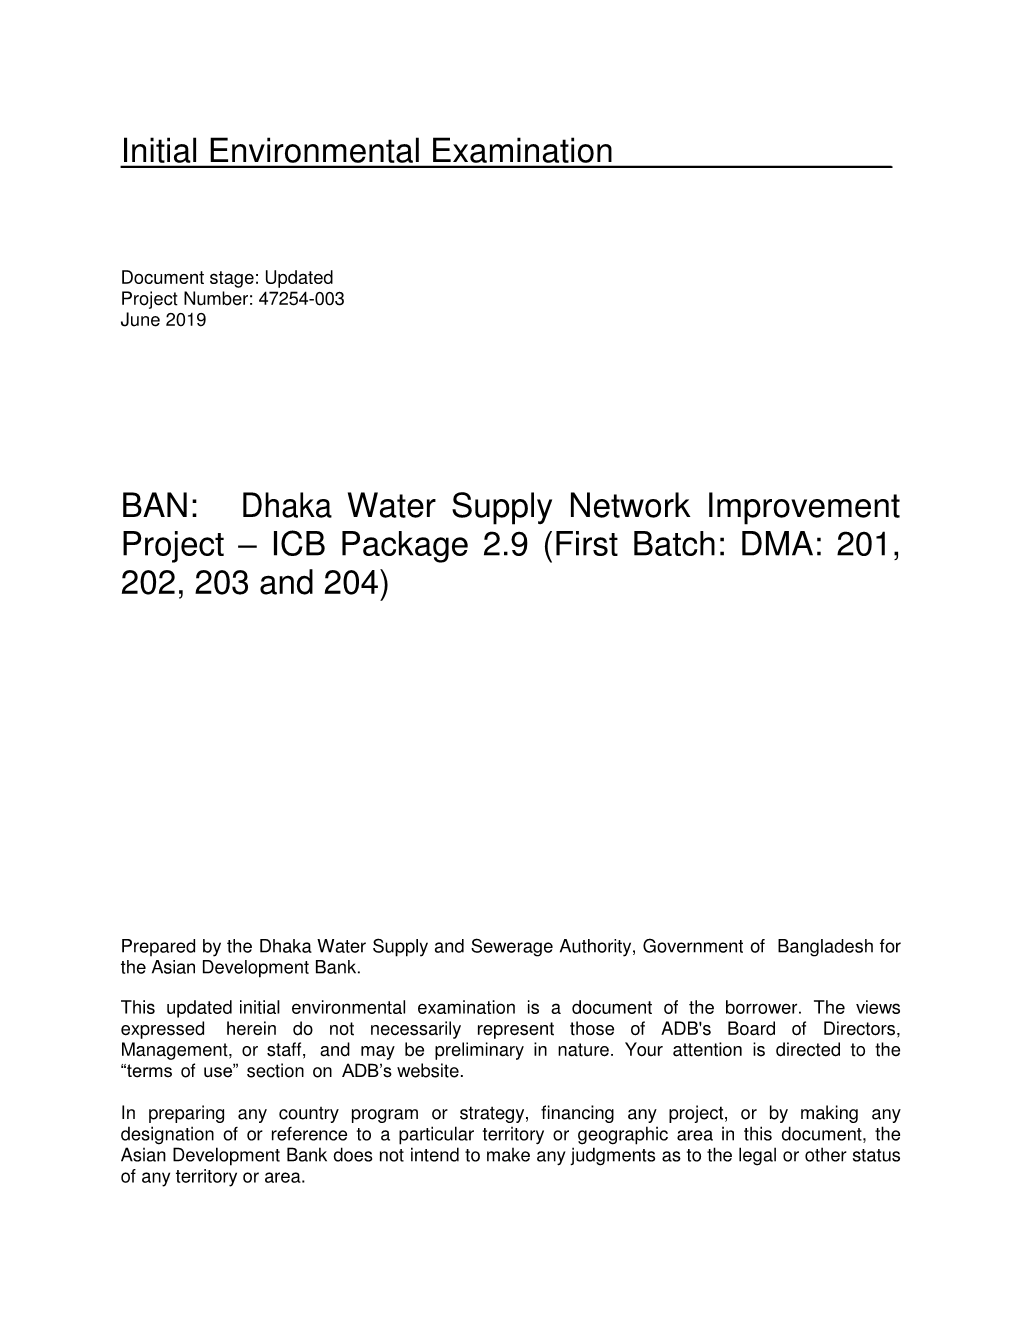 47254-003: Dhaka Water Supply Network Improvement